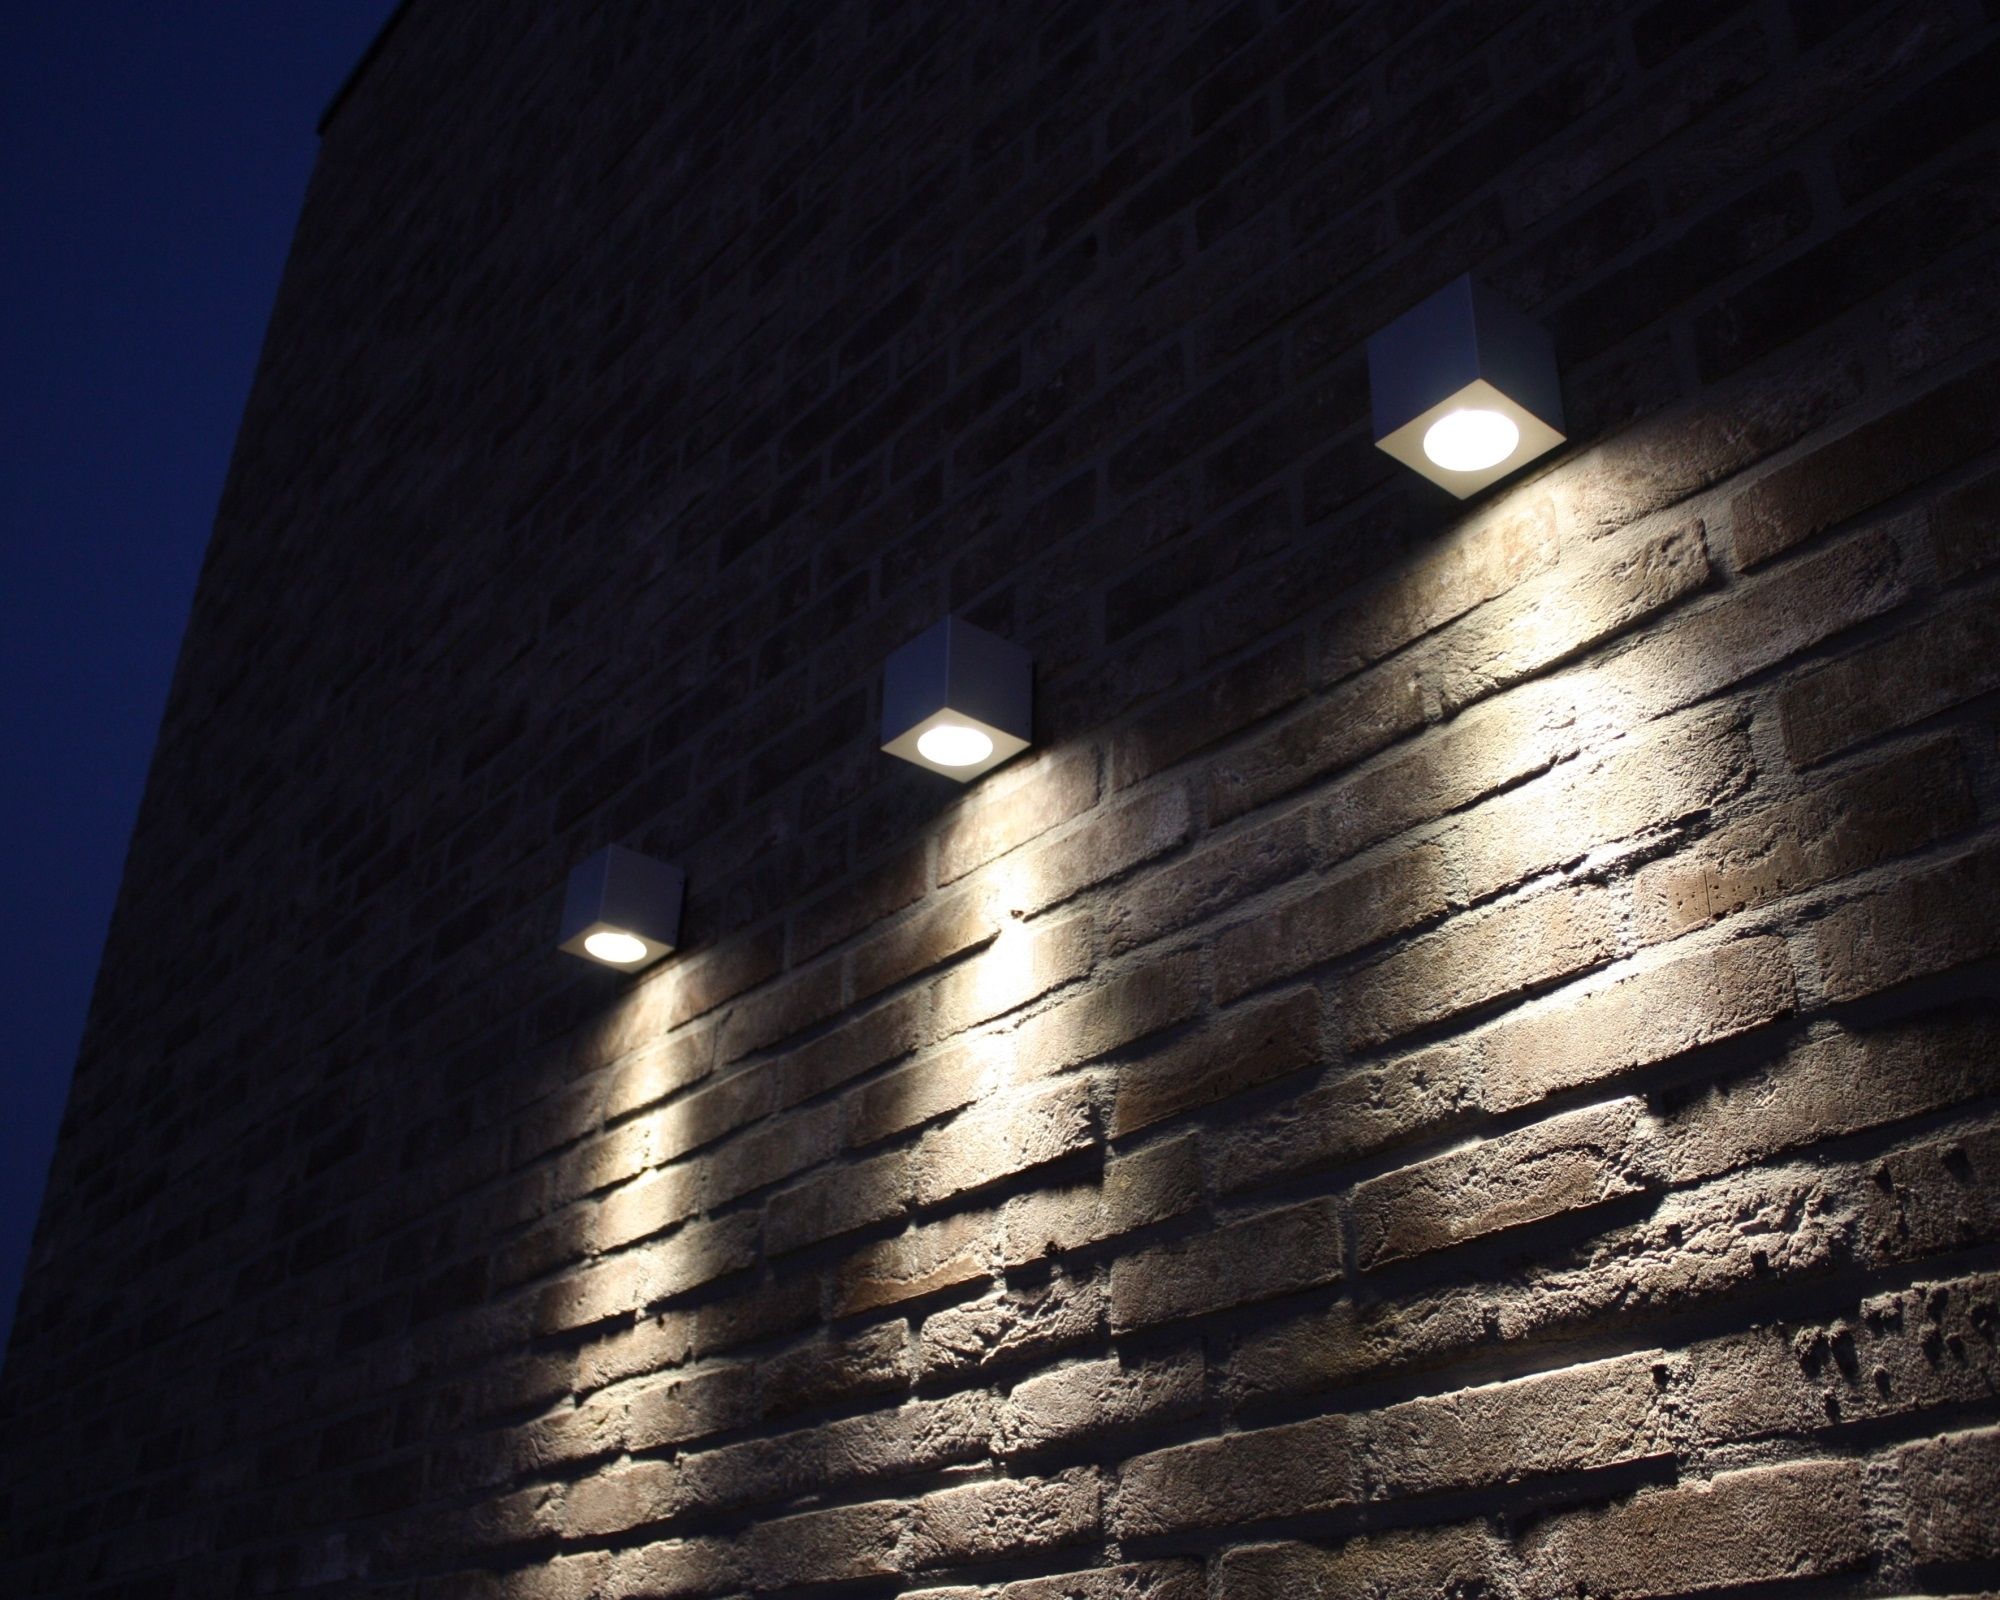 Patio Wall Lighting Ideas. Patio Wall Lighting Ideas N – Socopi (View 11 of 15)